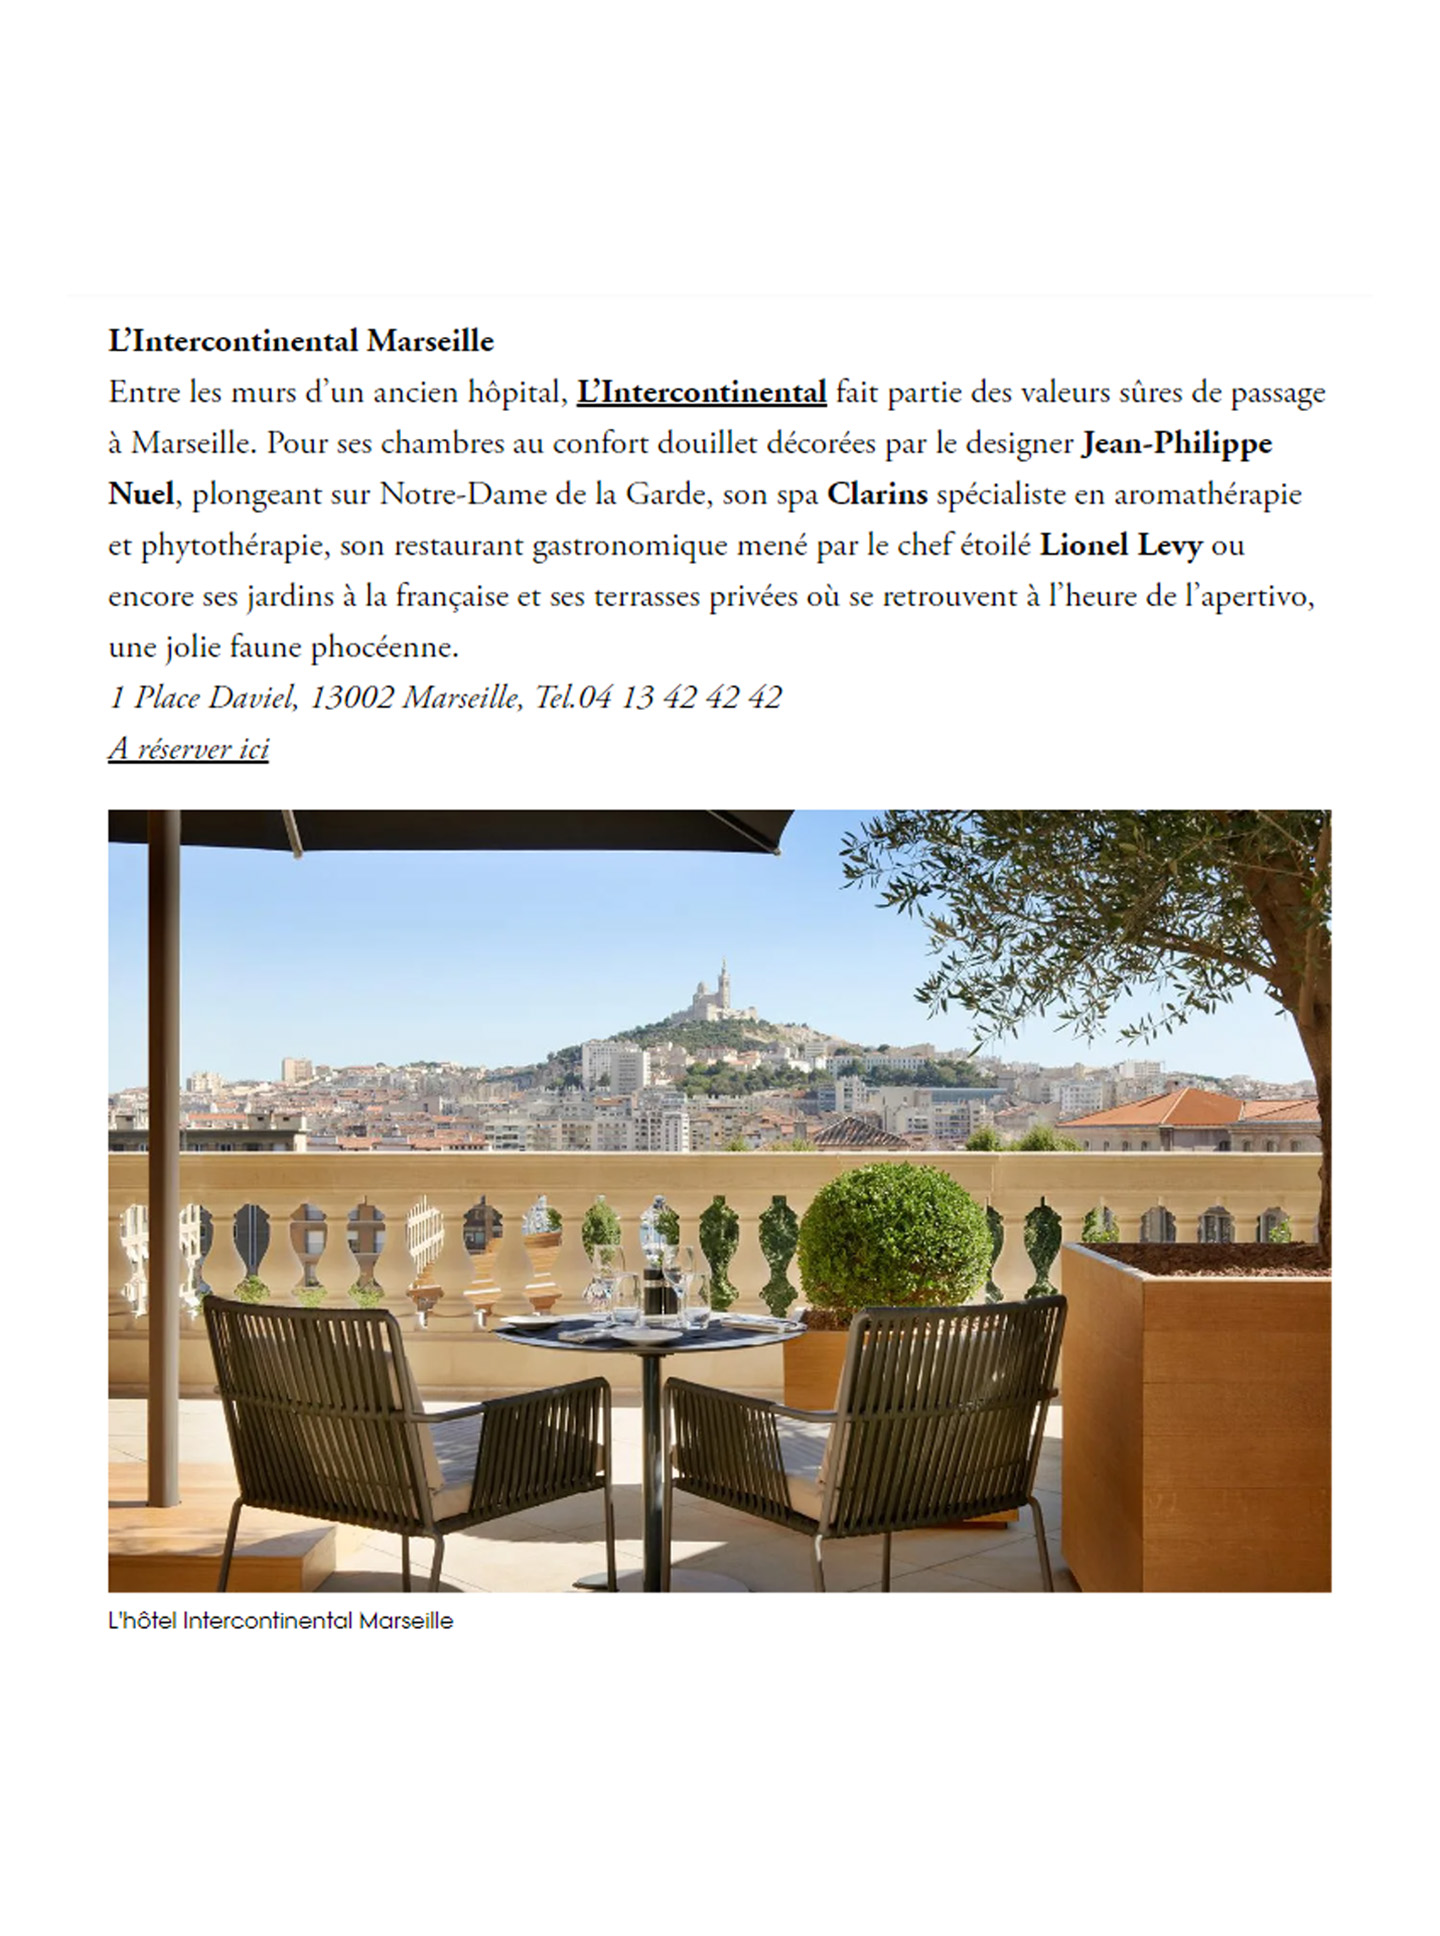 Article sur l'InterContinental marseille Hotel Dieu réalisé par le studio jean-Philippe Nuel dans le magazine vogue, nouvel hotel de luxe, architecture d'intérieur de luxe, patrimoine historique